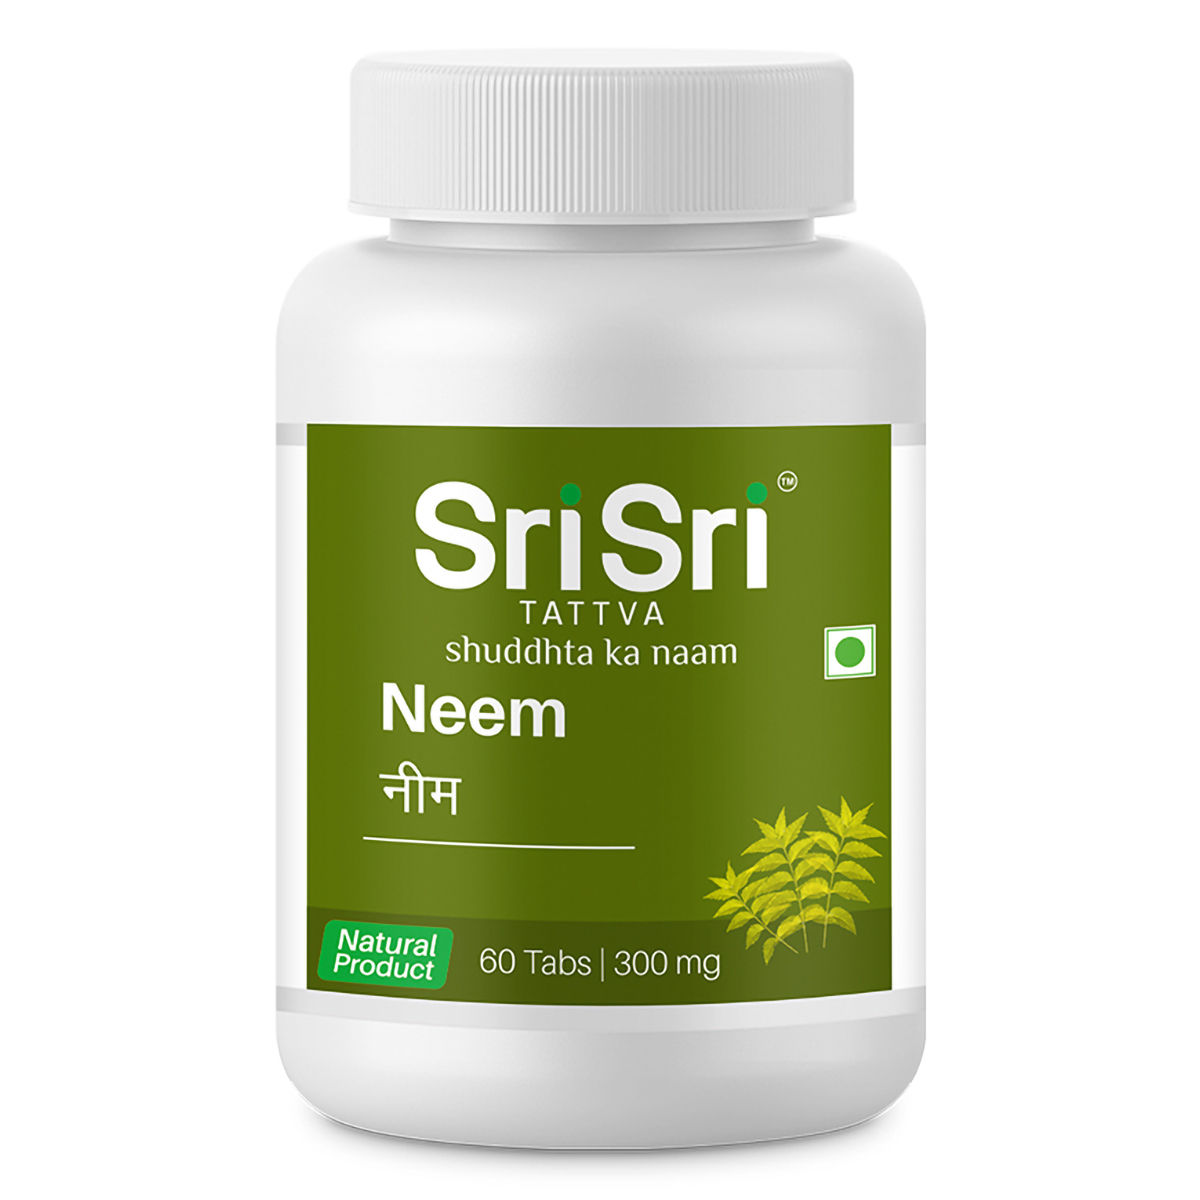 Buy Sri Sri Tattva Neem 300 mg, 60 Tablets Online